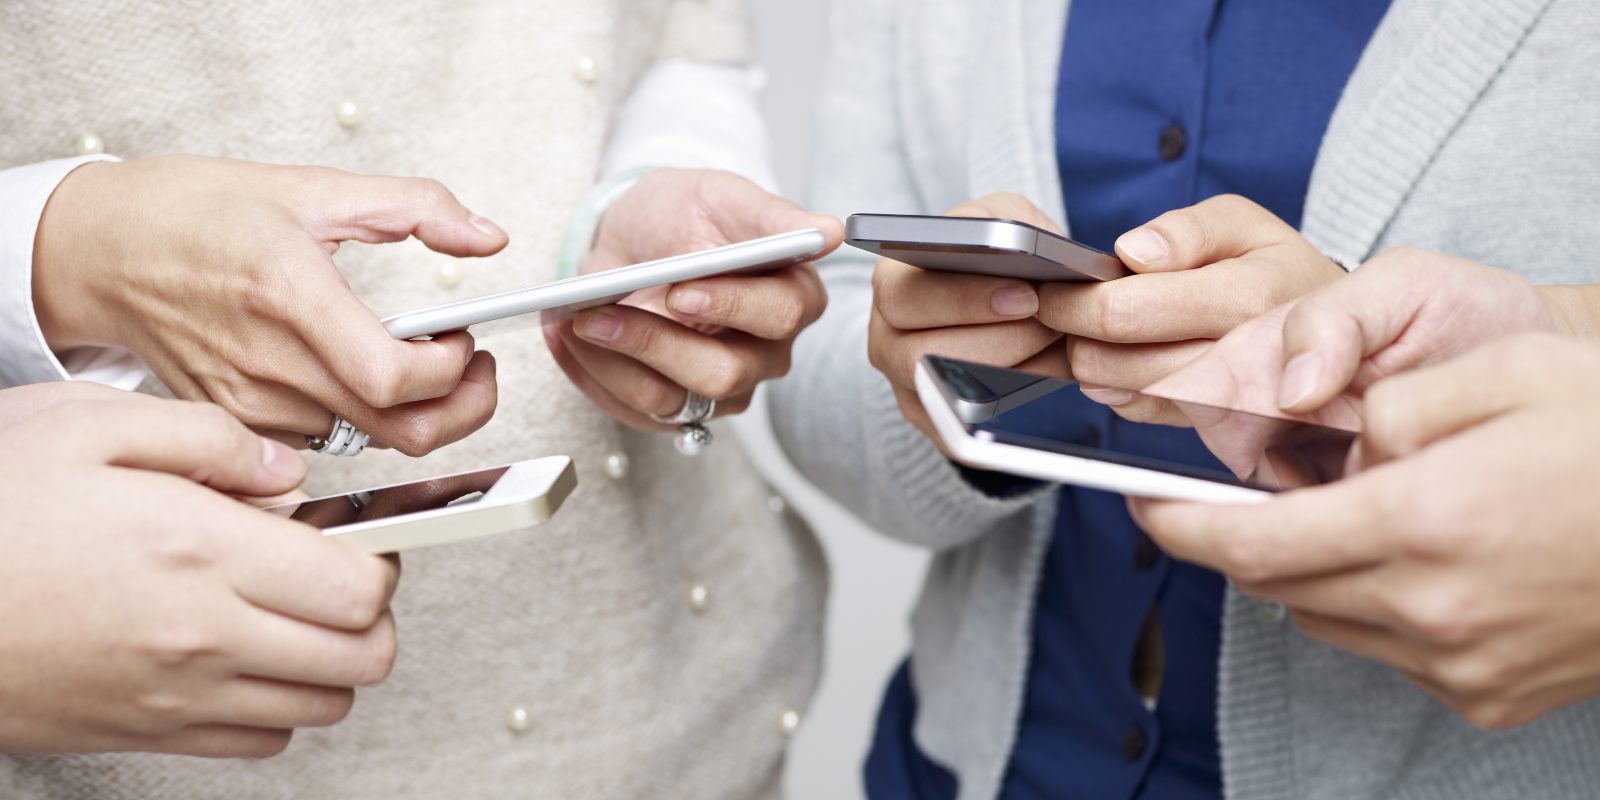 Le CRTC met un terme à la vente d’appareils cellulaires verrouillés